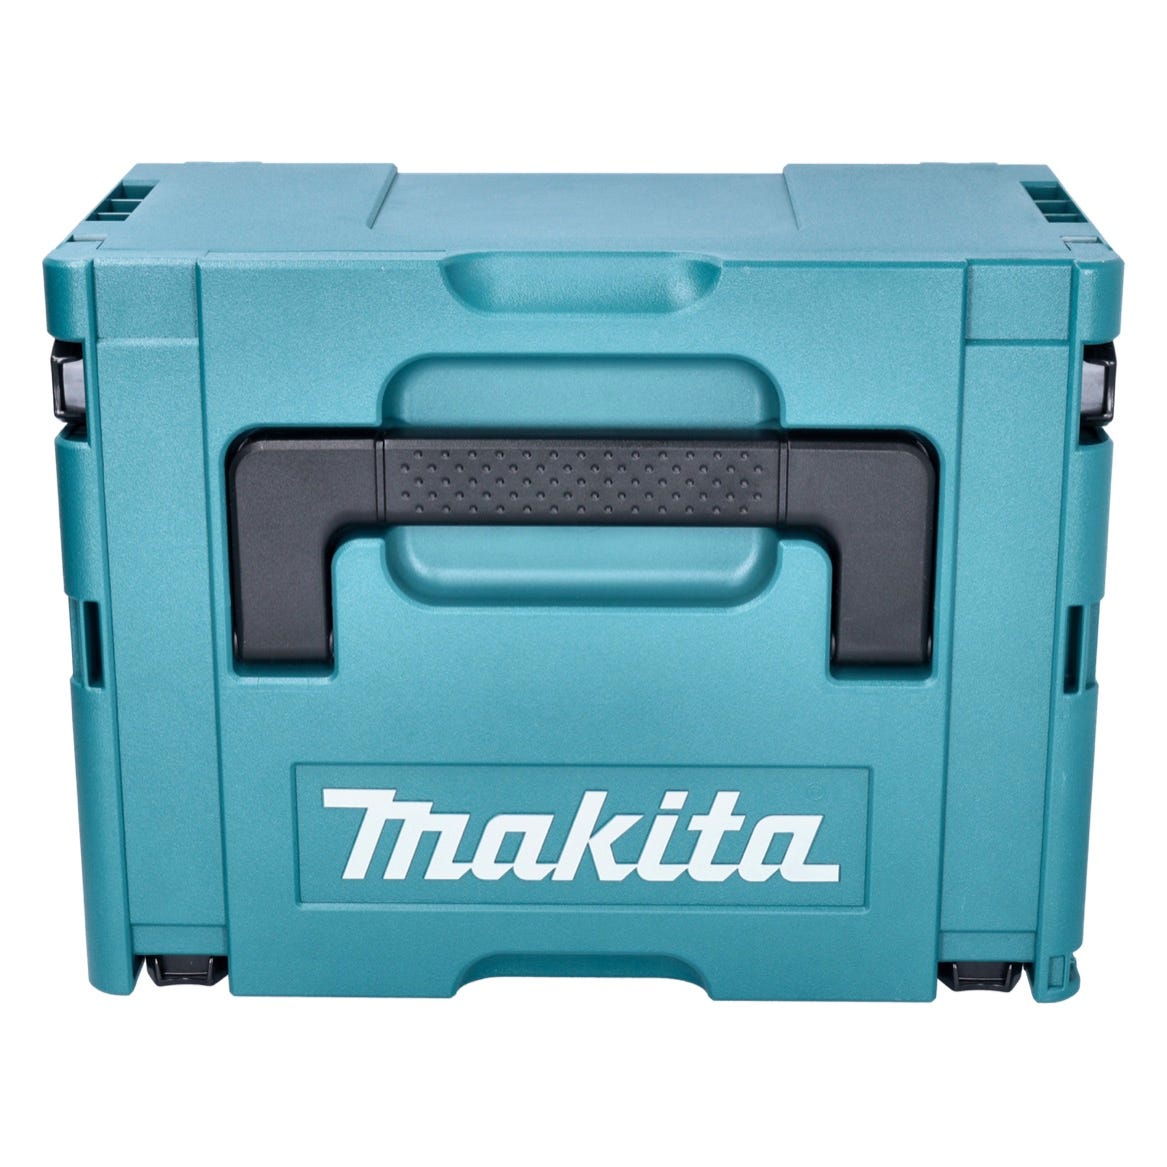 Makita DJS 200 RF1J cisaille à batterie 18 V 2.0 mm sans balais + 1x batterie 3.0 Ah + chargeur + Makpac 2